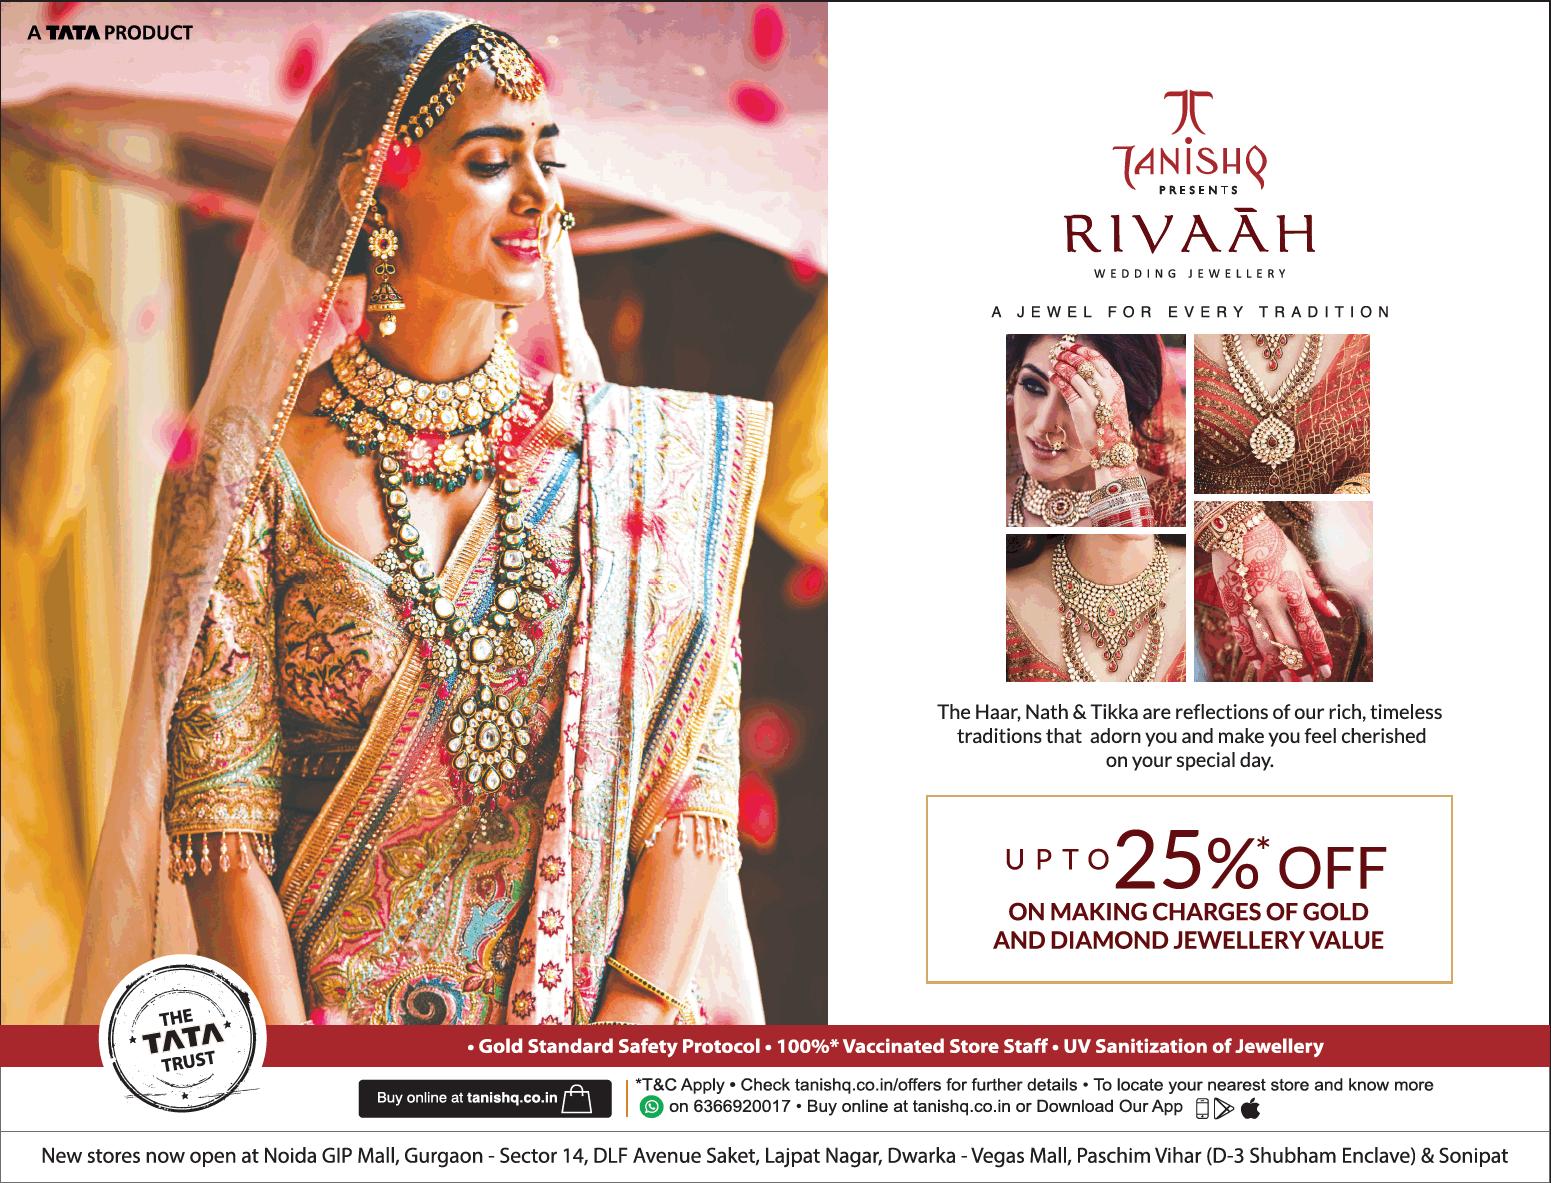 tanishq-rivaah-wedding-jewellery-upto-25%-off-ad-toi-delhi-1-7-2021